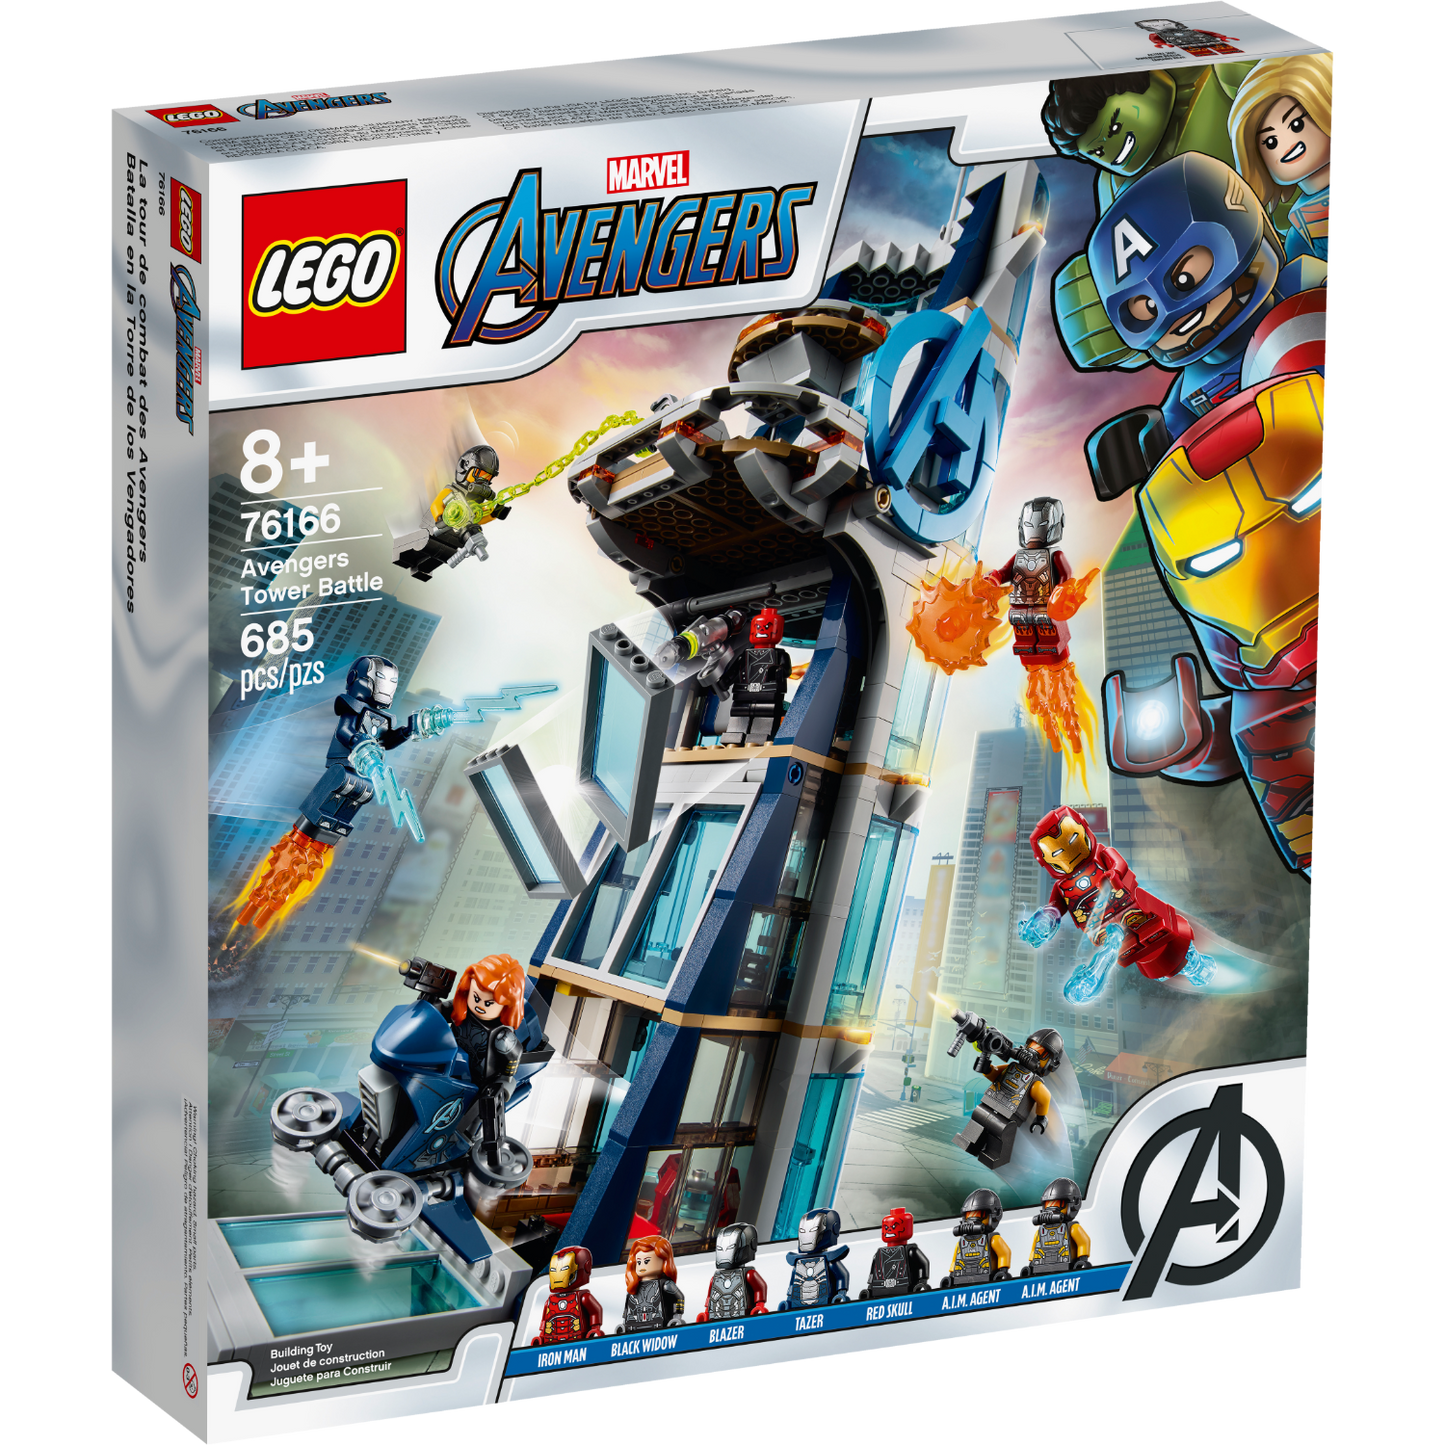 76166 Avengers Tower Battle (Retired) LEGO Marvel Super Heroes